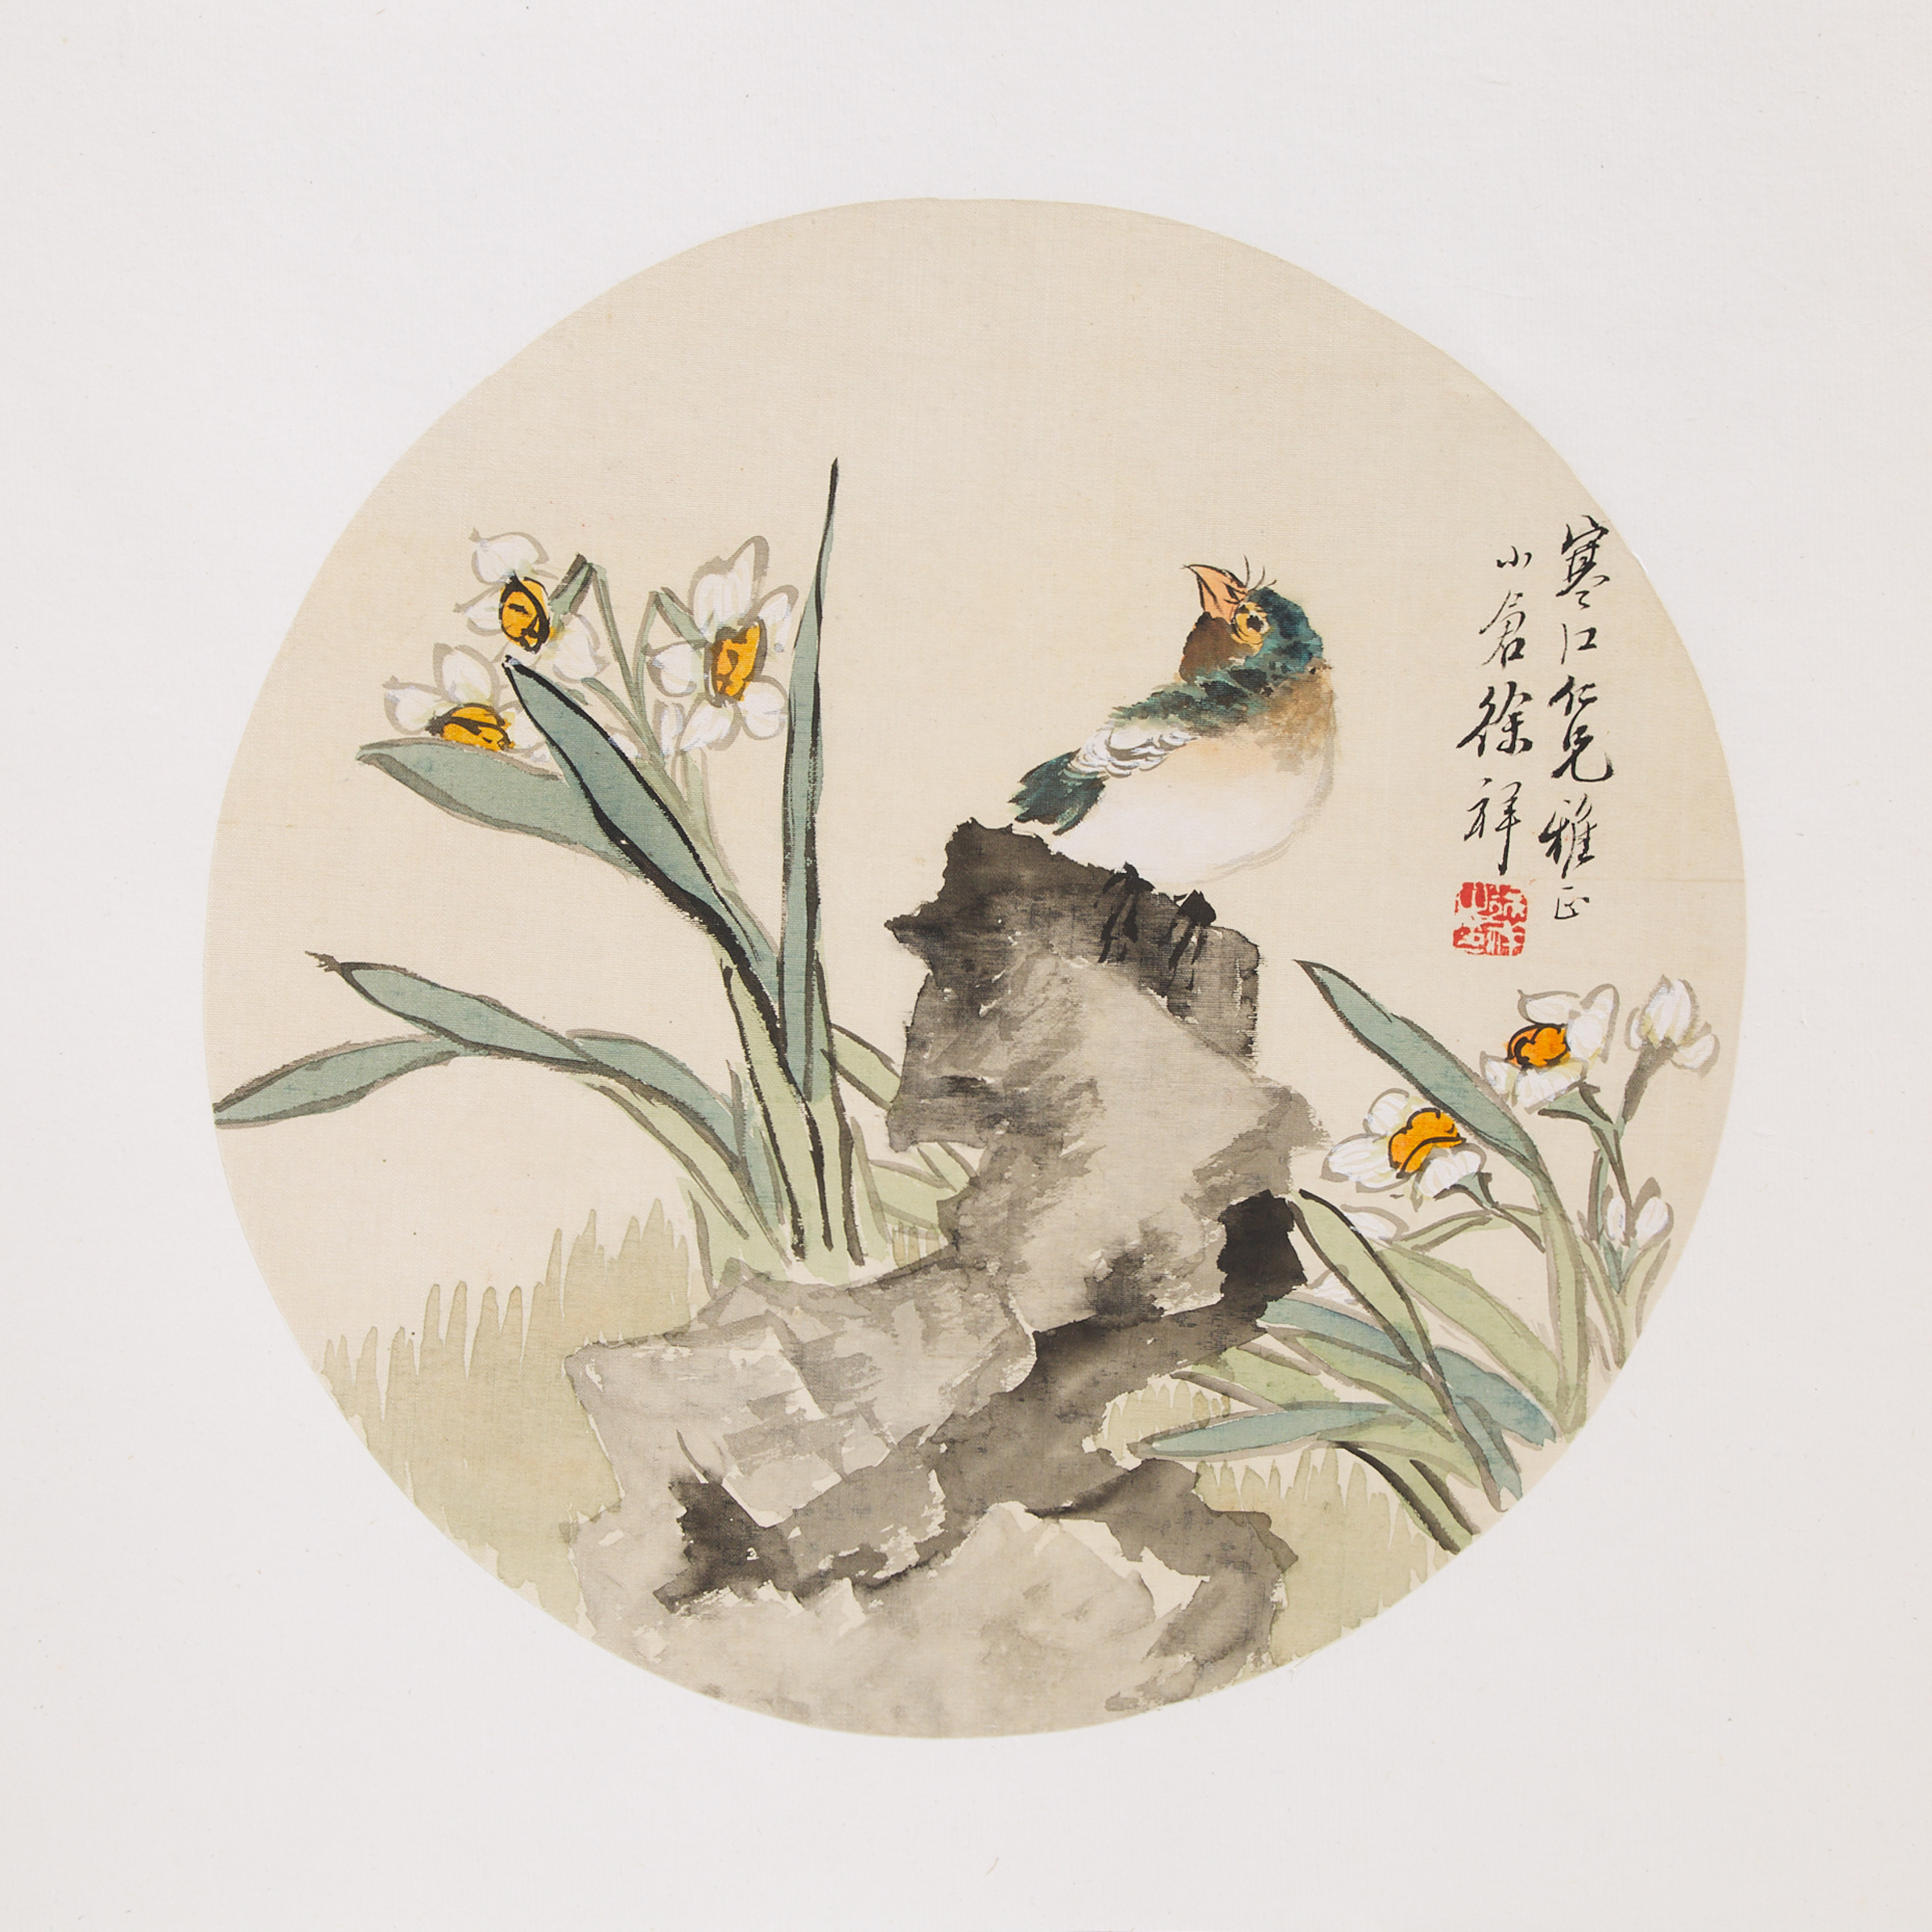 Xu Xiang (1850-1899), Bird and Flowers